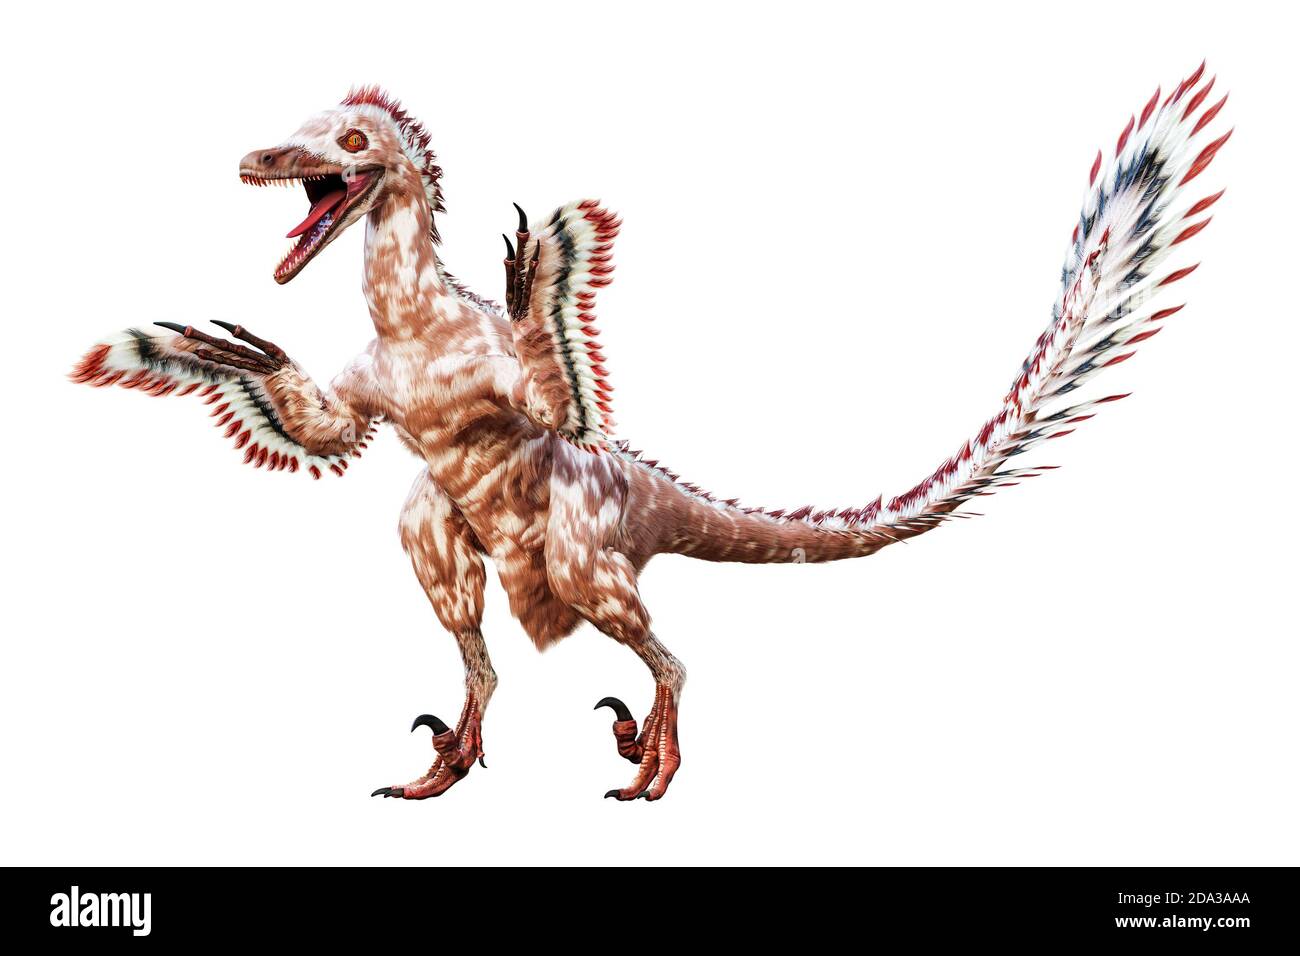 Debout Velociraptor mongoliensis isolé sur fond blanc. Dinosaure théropode avec des plumes de la période crétacée scientifique 3D rendant malade Banque D'Images